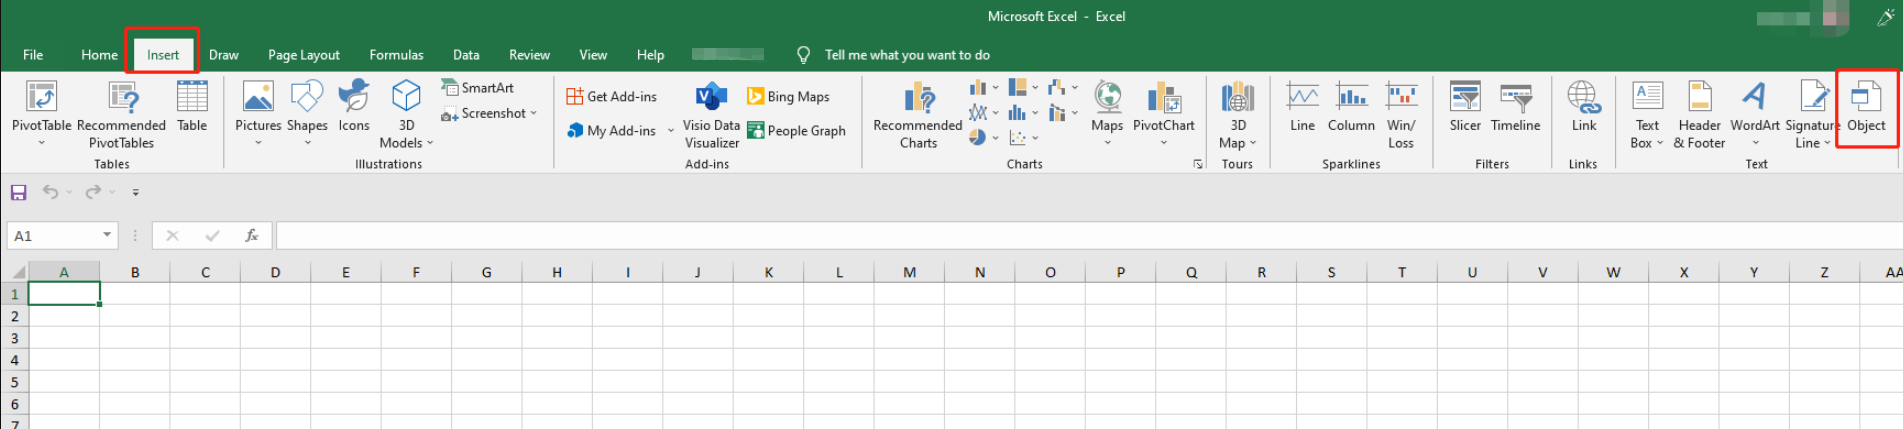 Öffnen Sie Ihre Excel-Tabelle, tippen Sie auf Einfügen und wählen Sie die Option Objekt;